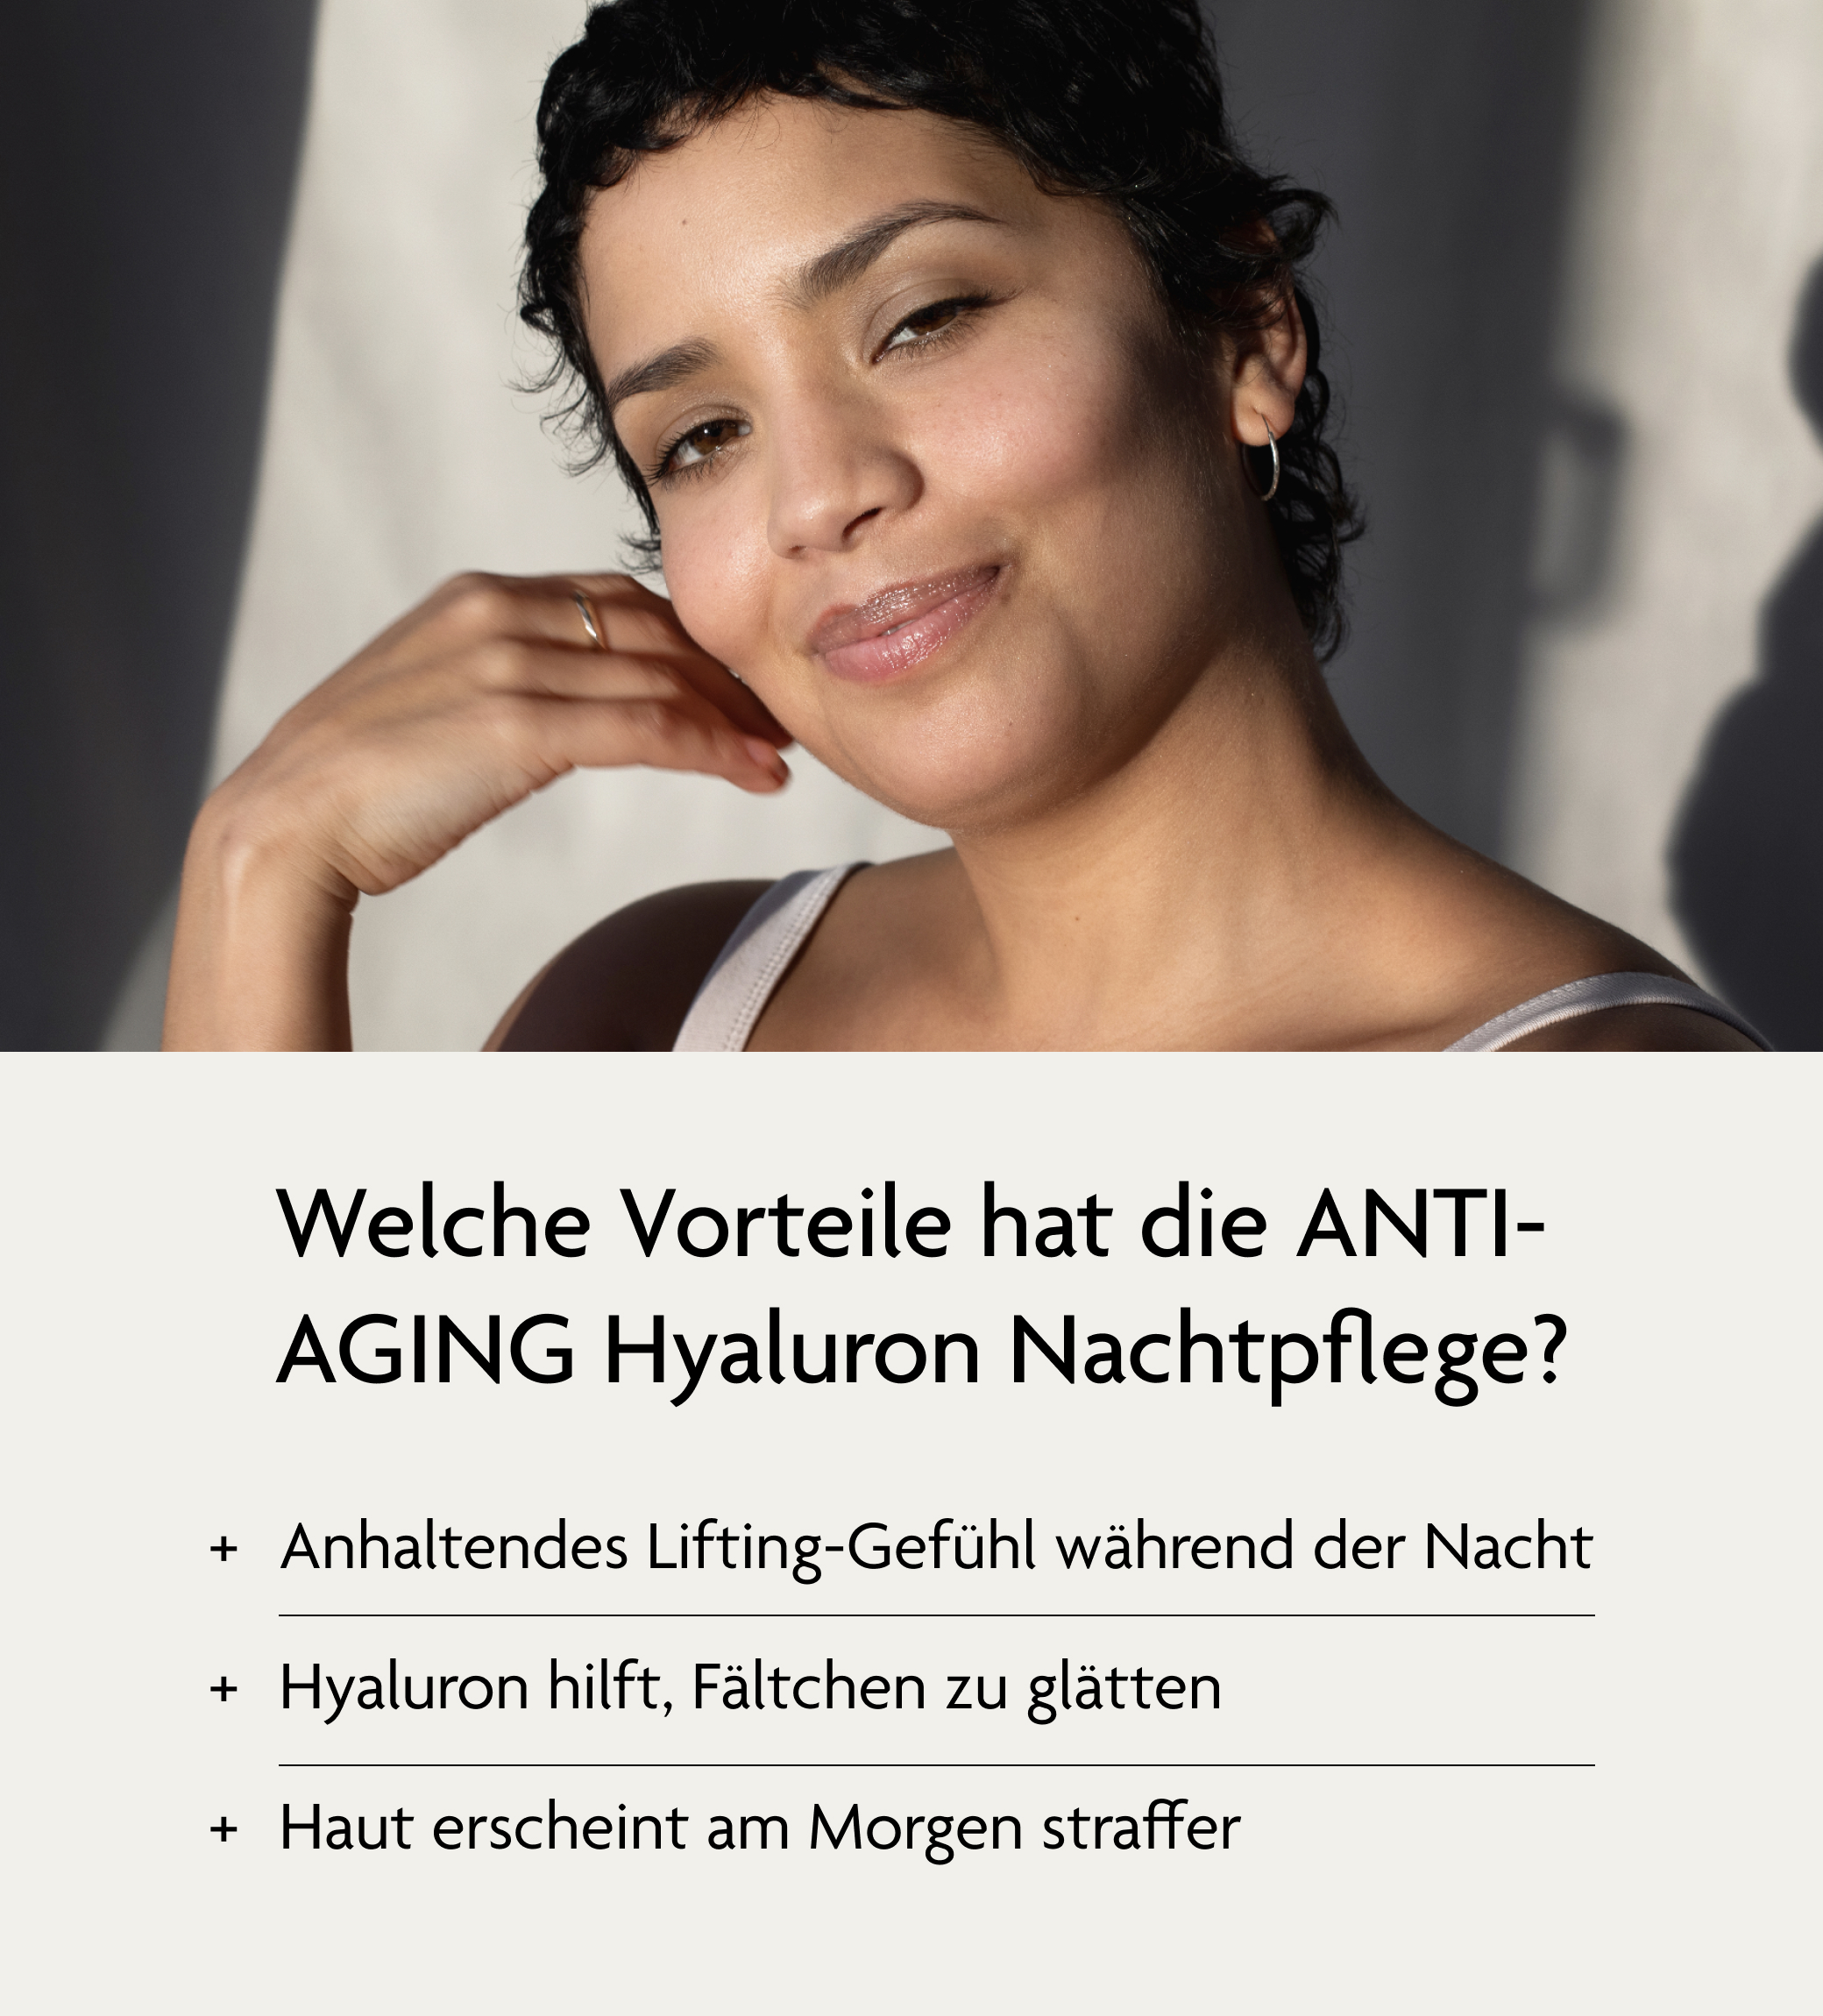 SKINTIST ANTI-AGING Hyaluron Nachtpflege - Vorteile